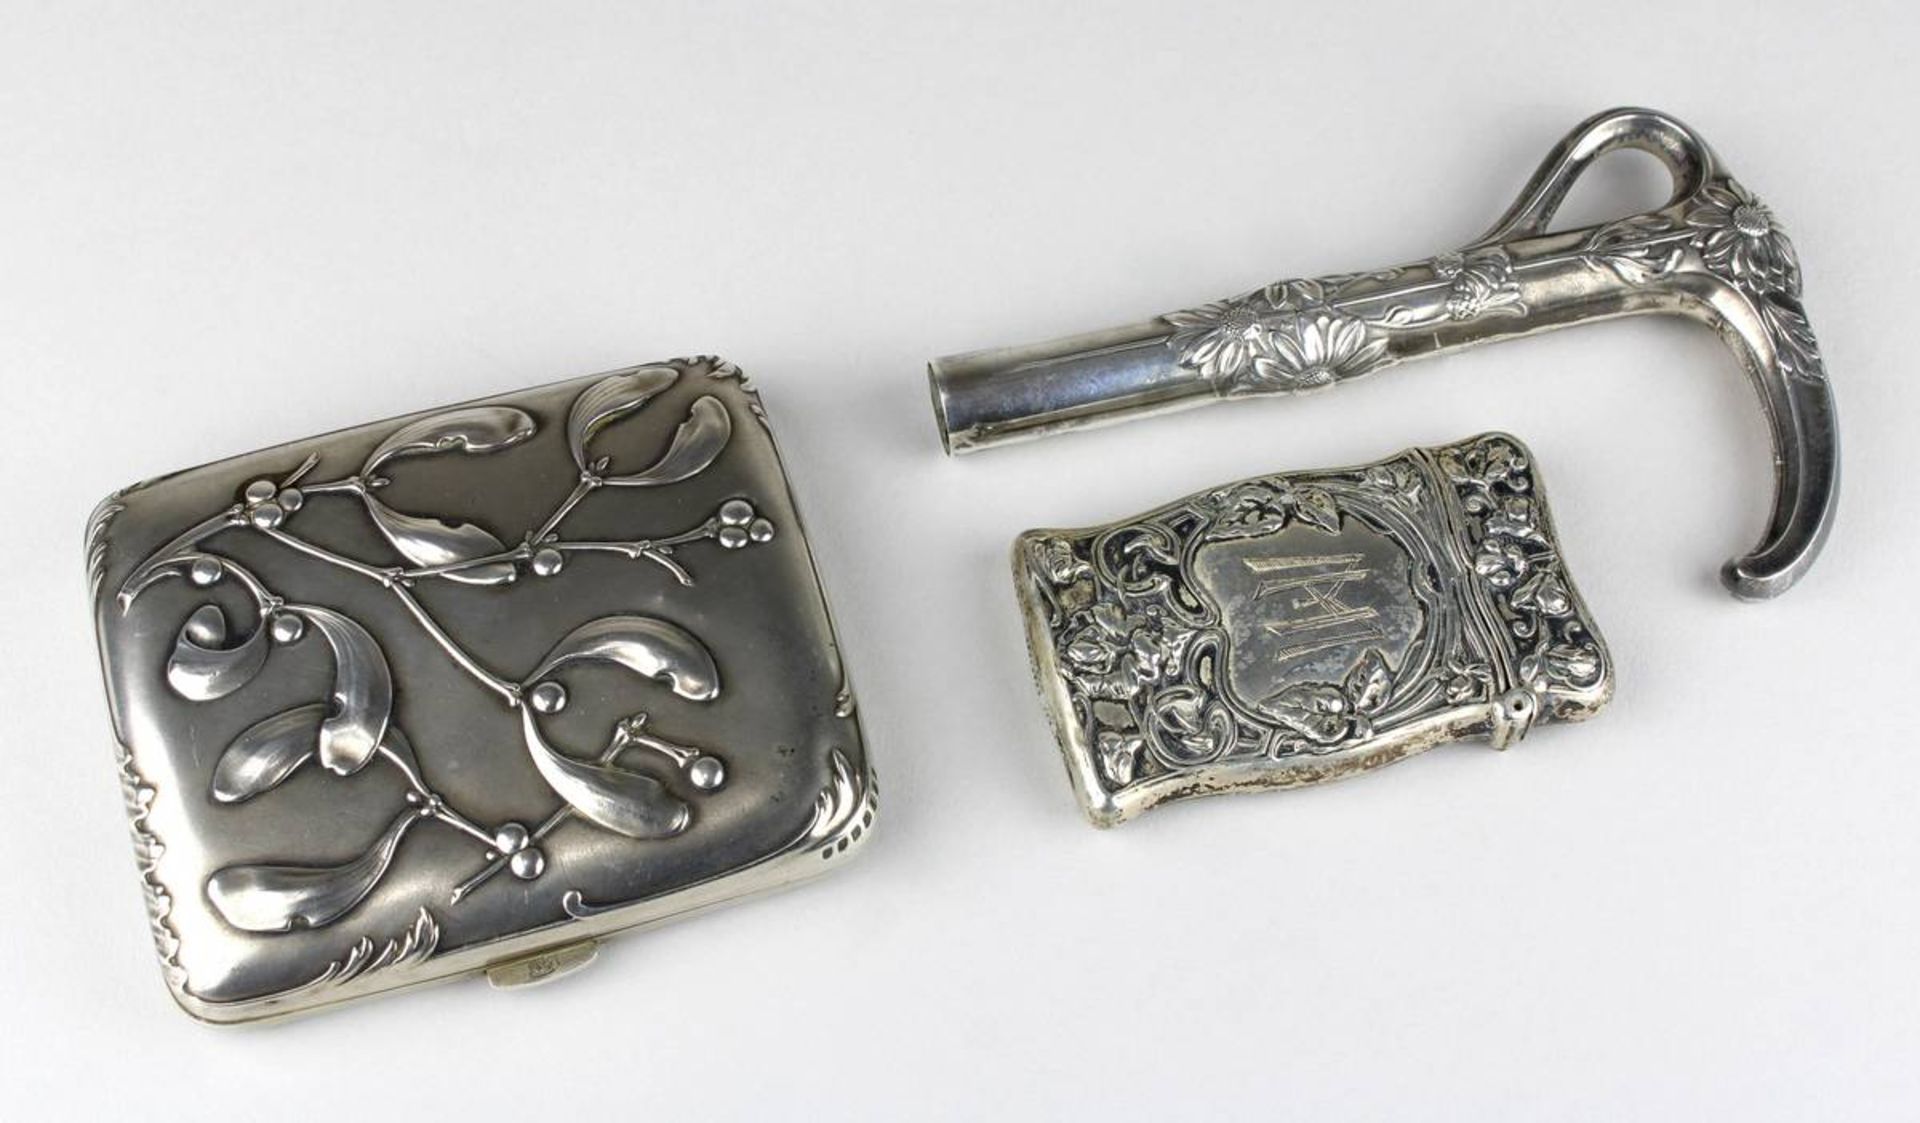 Zigaretten-Etui, Schirmgriff u. Streichholzetui aus Silber, Jugendstil um 1900, jeweils mit